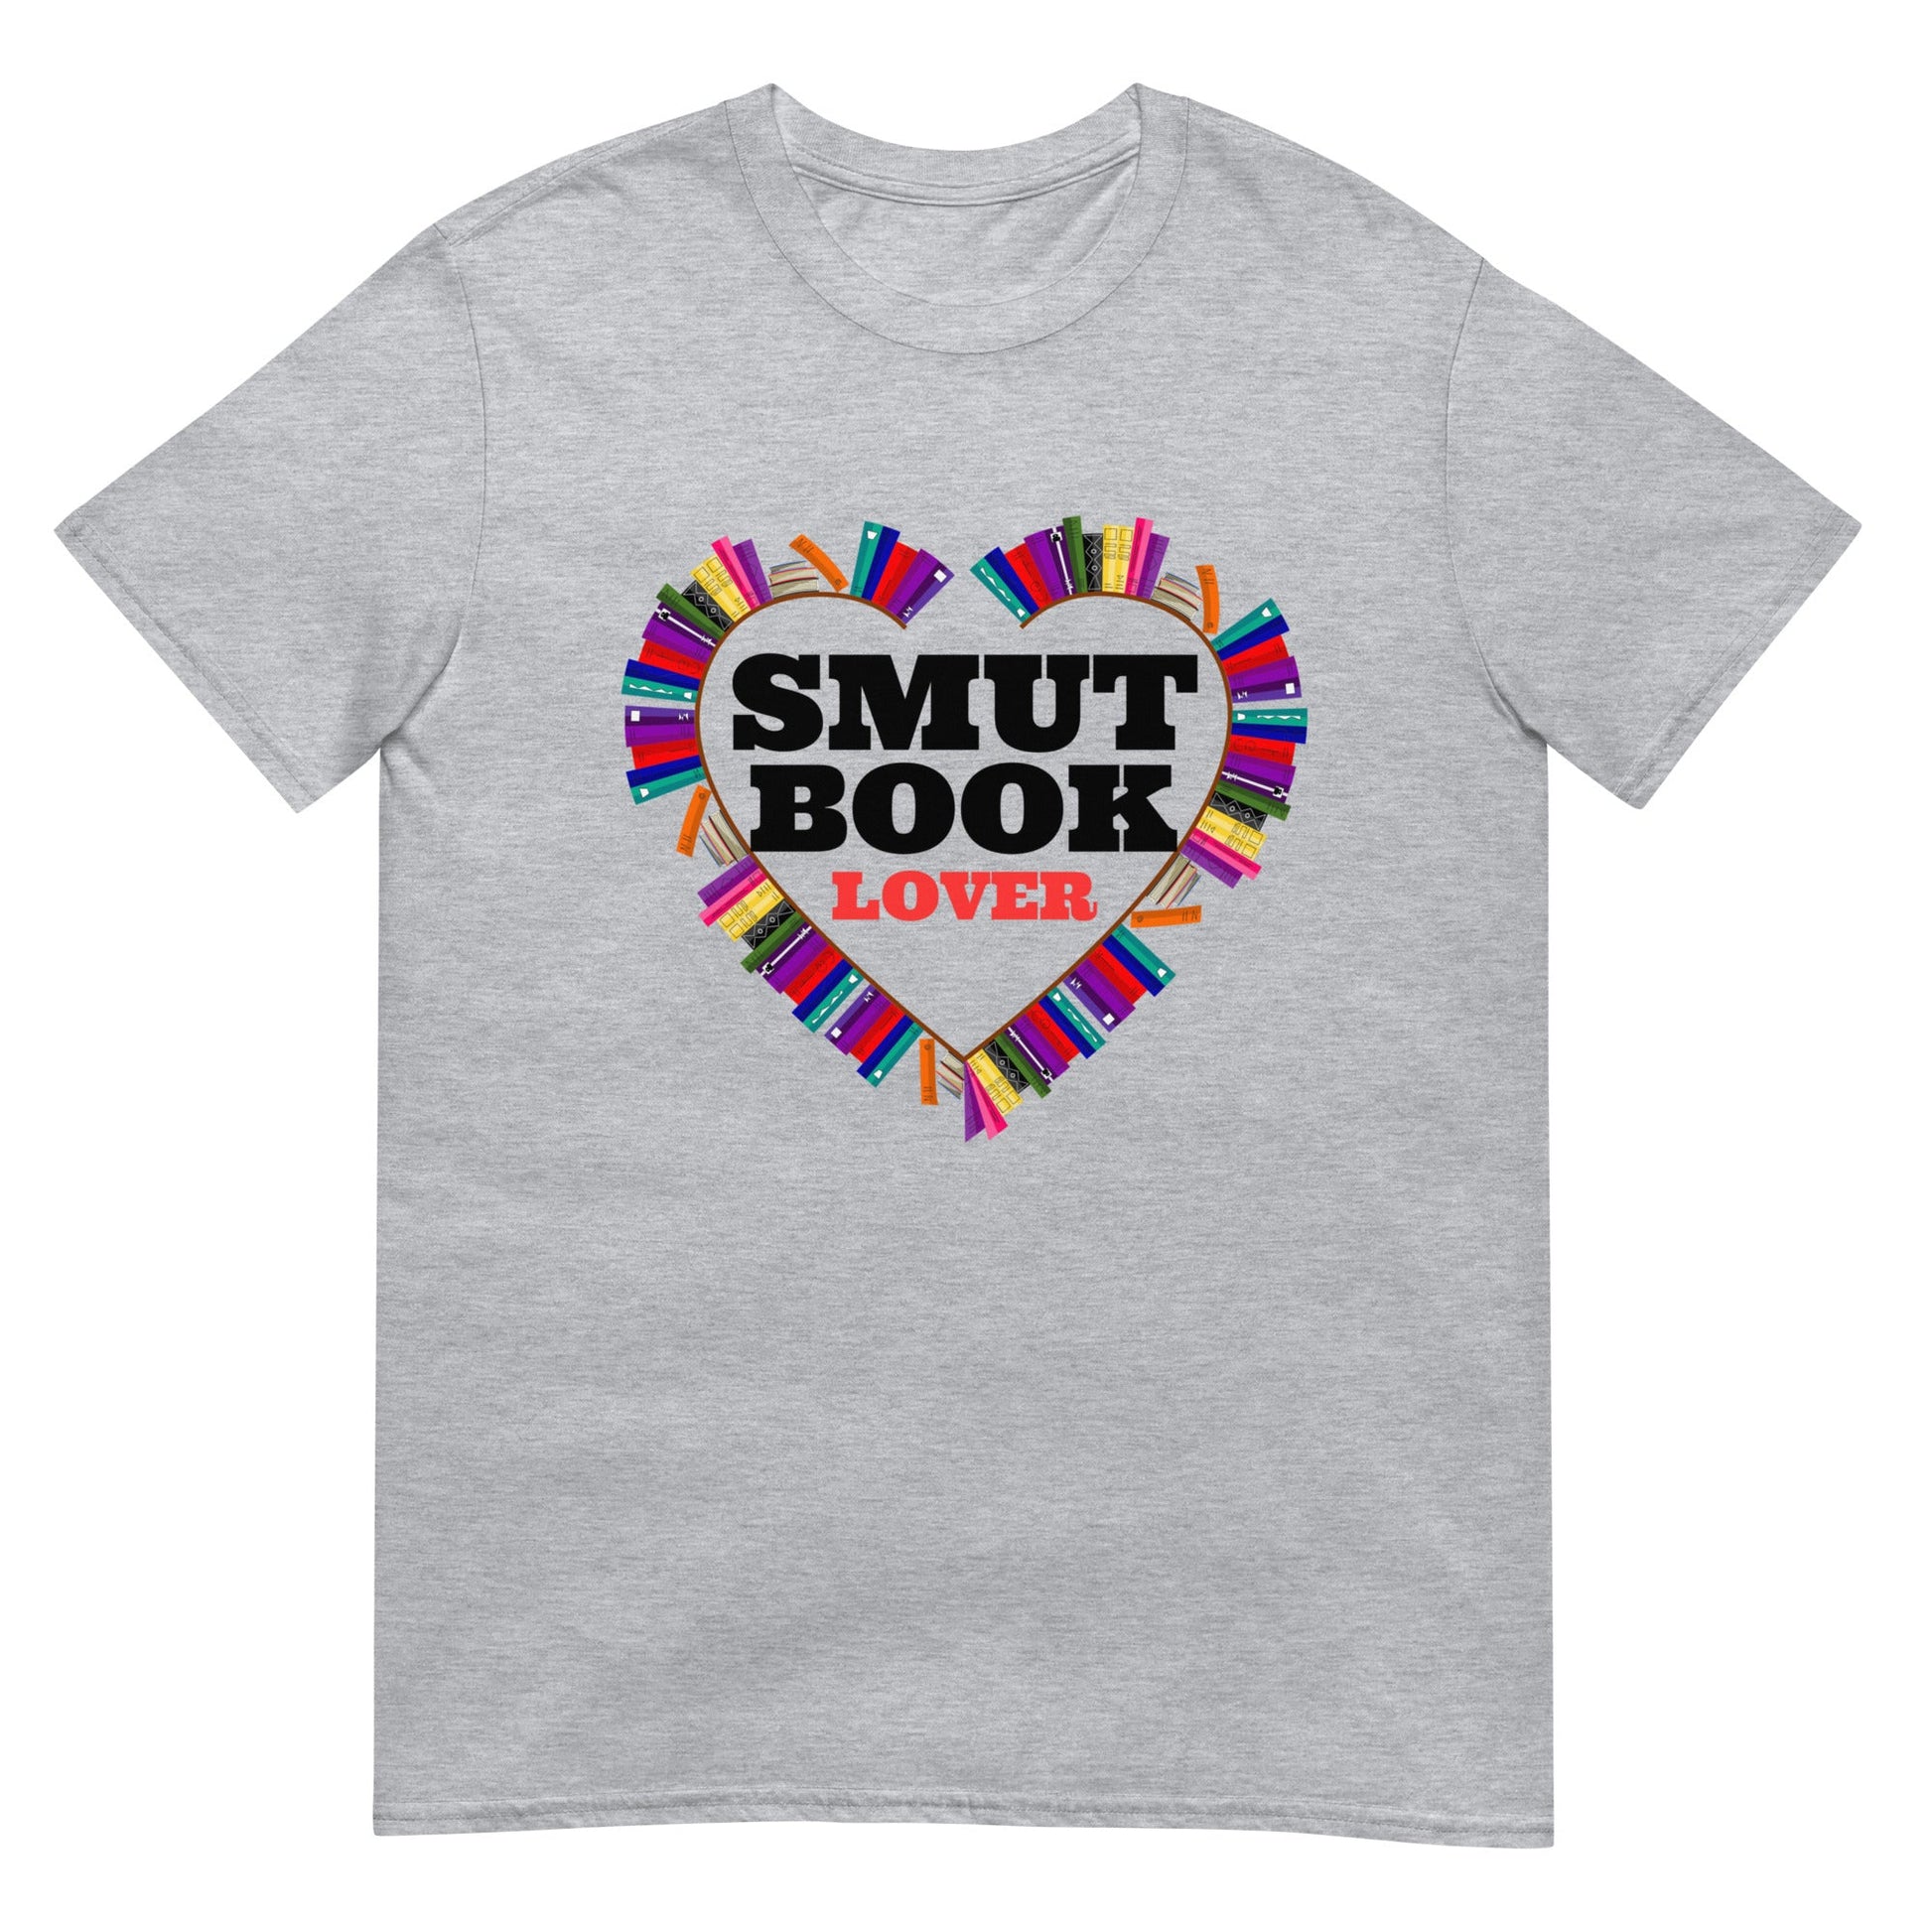 Smut Book Lover T-Shirt - Kindle Crack